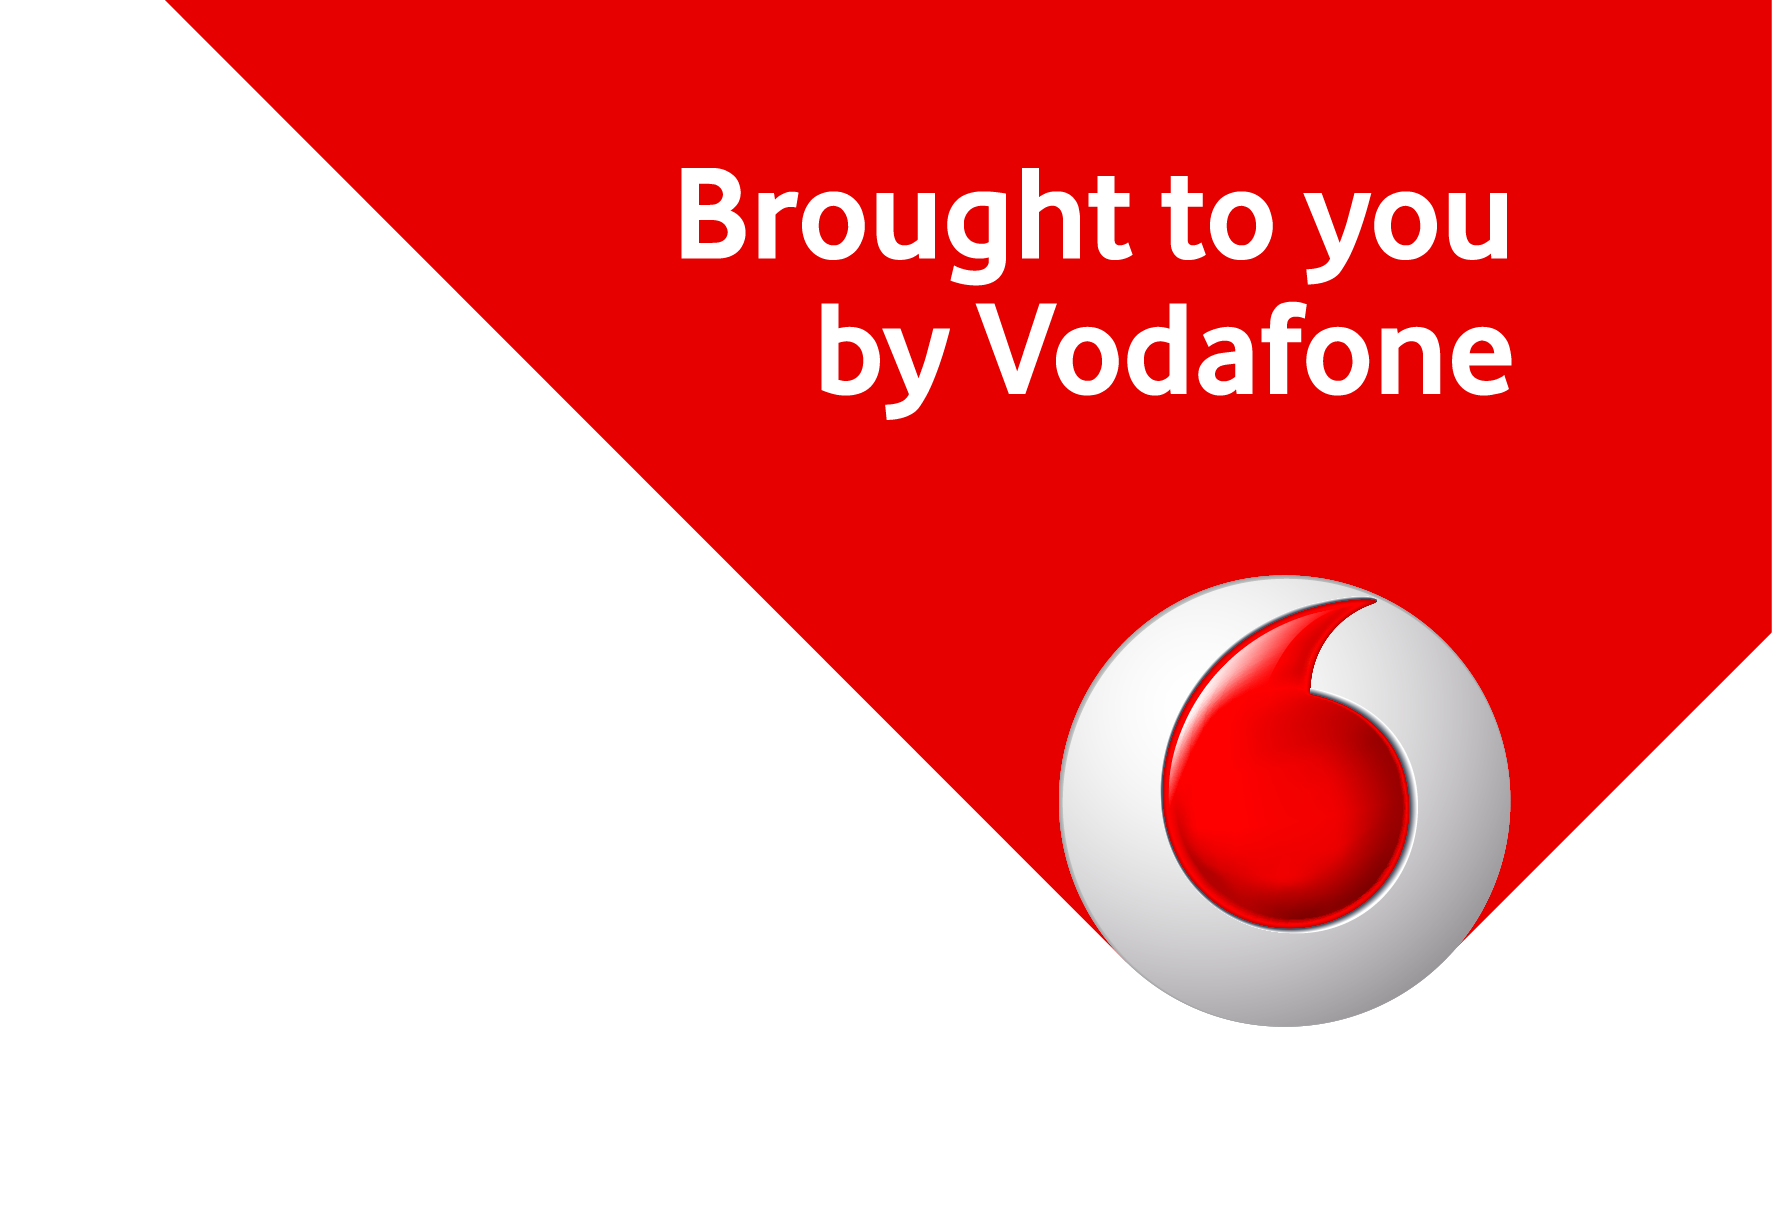 Offerte Vodafone in scadenza oggi 13 aprile: ecco come attivarle